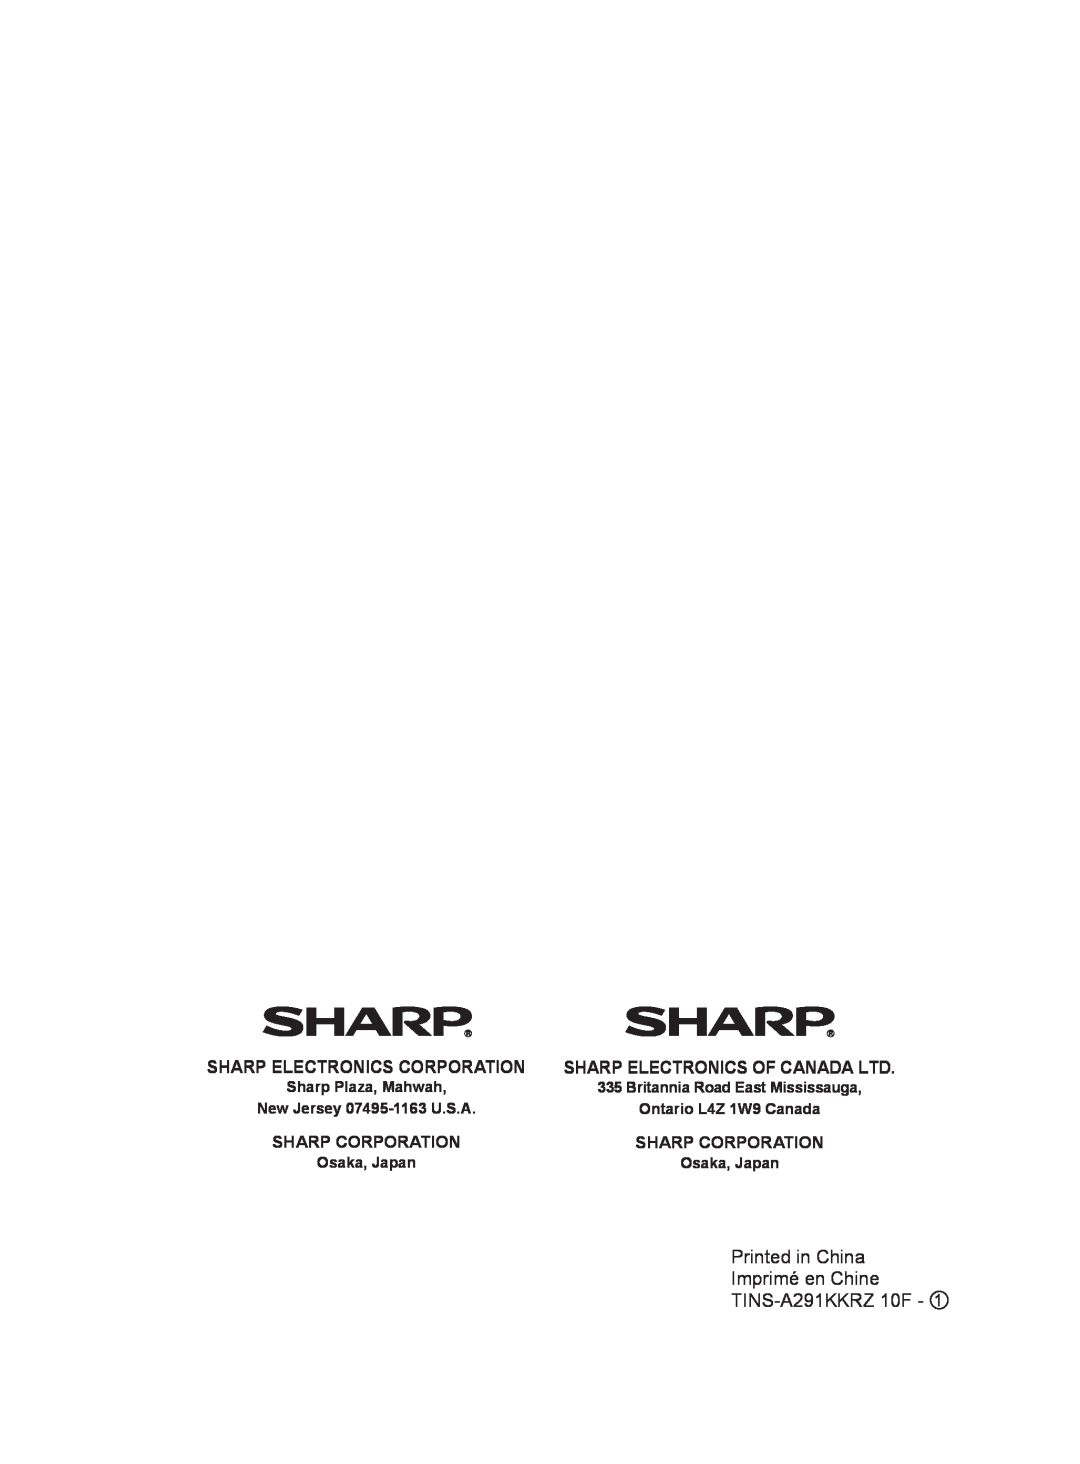 Sharp IG-A10U operation manual Sharp Electronics Corporation, Sharp Corporation, New Jersey 07495-1163 U.S.A, Osaka, Japan 